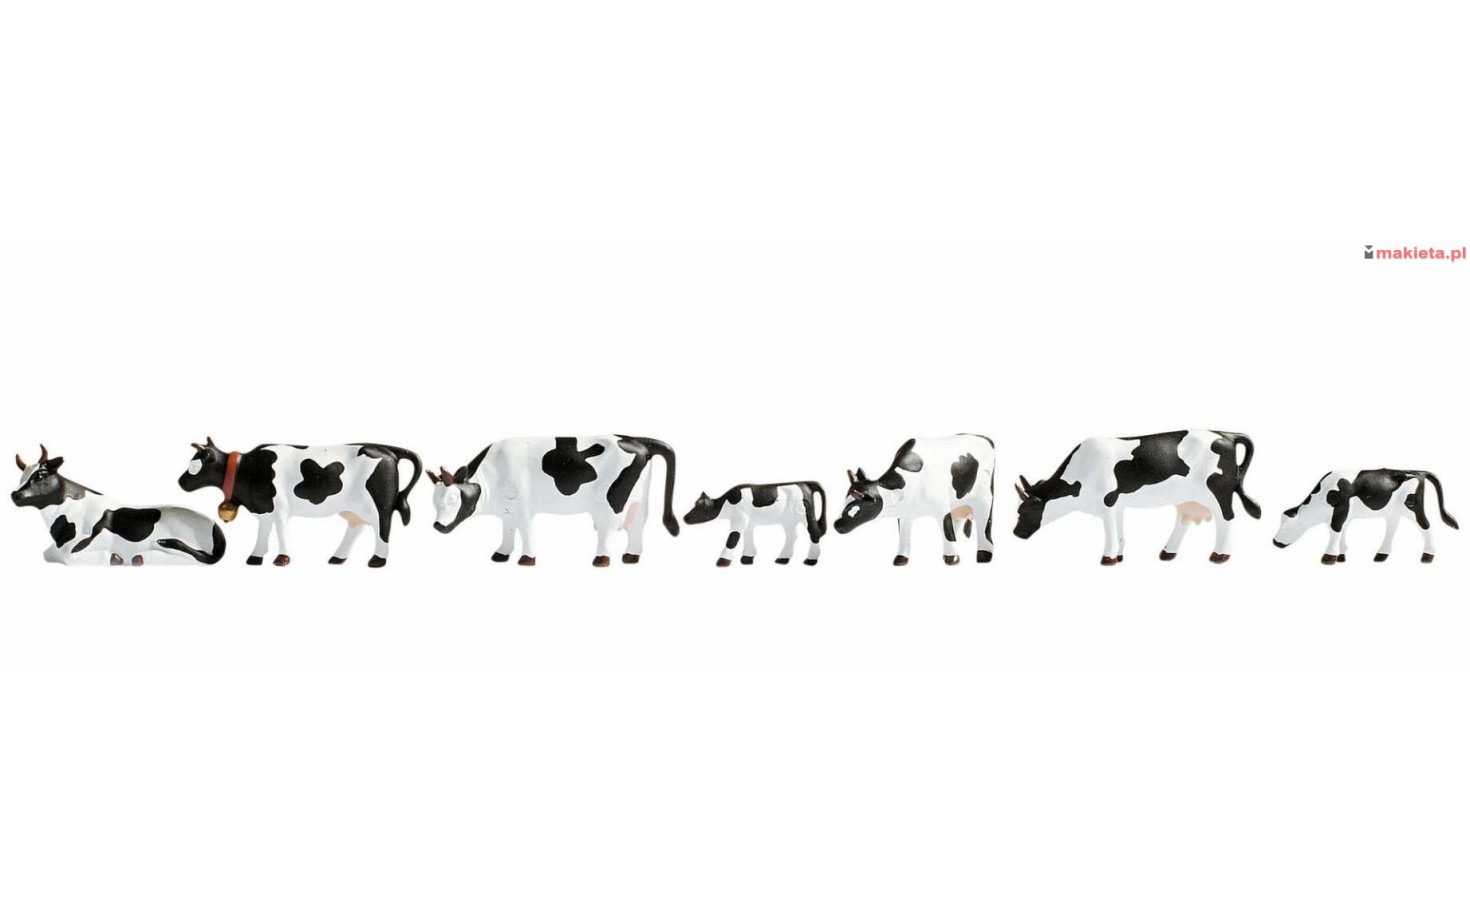 NOCH 45721. Krowy łaciate czarno-białe, skala TT (1:120).